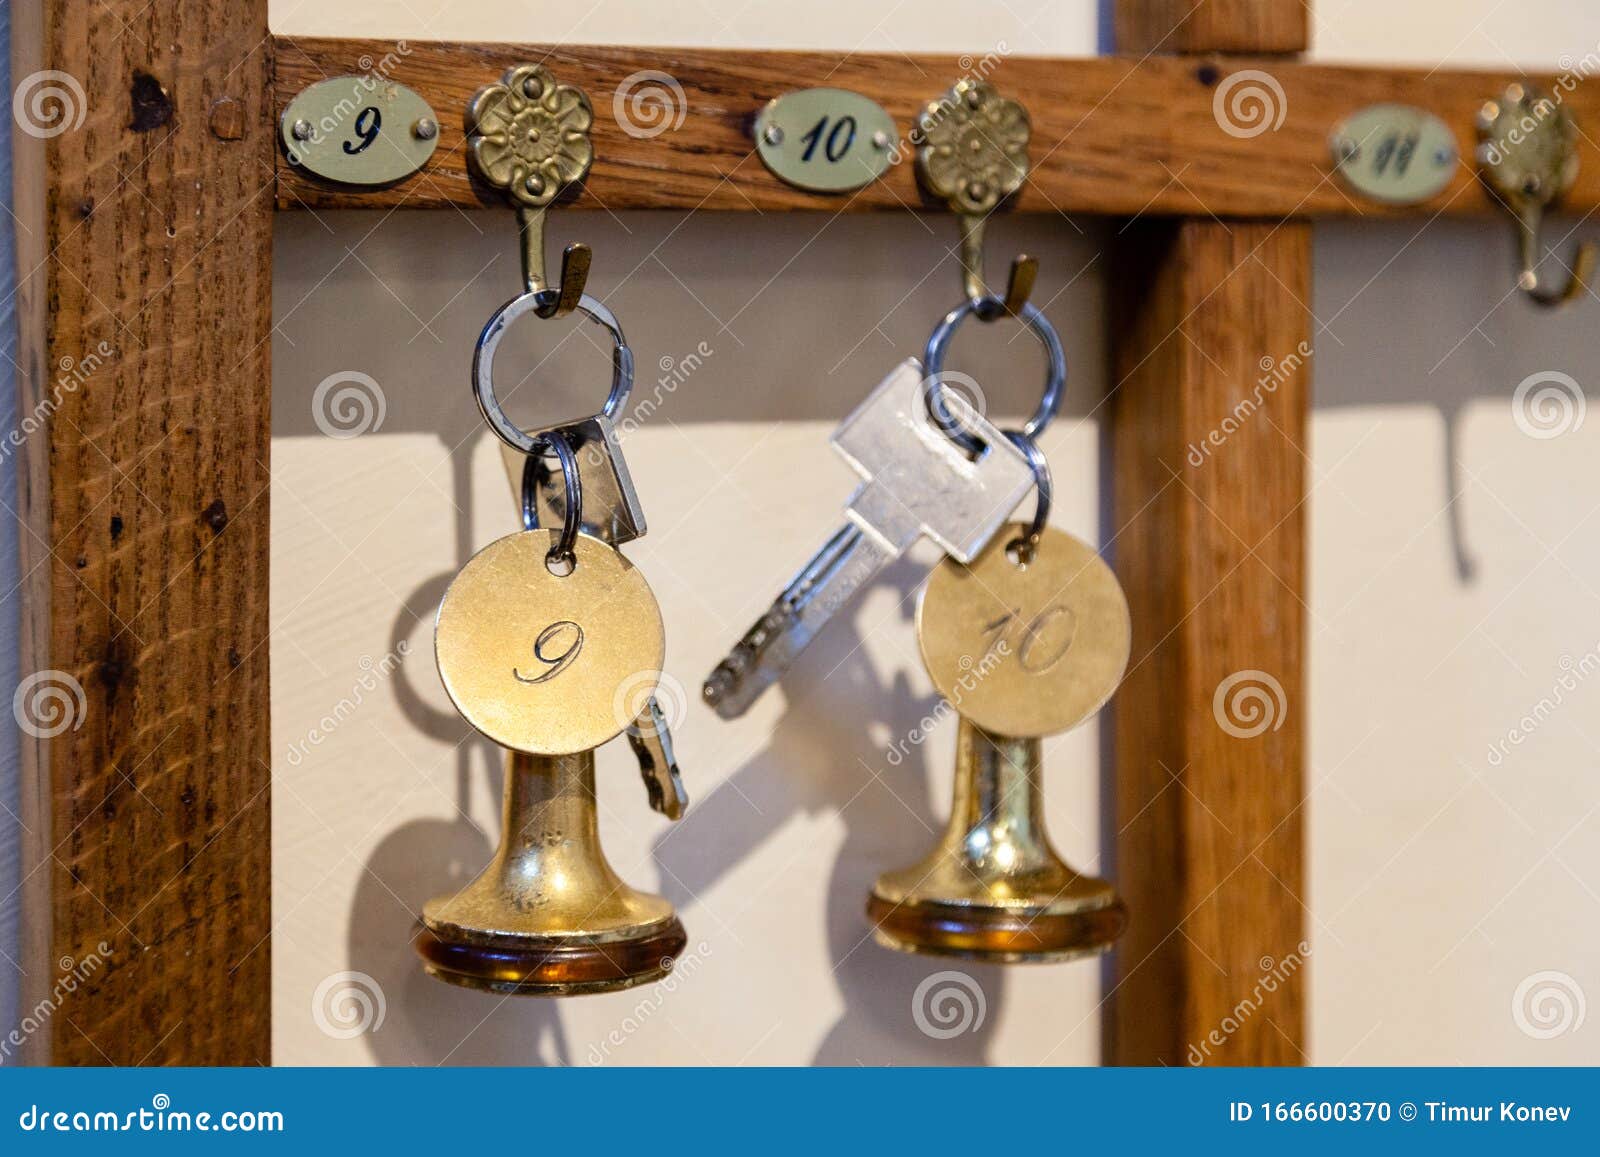 Vintage Key Holder